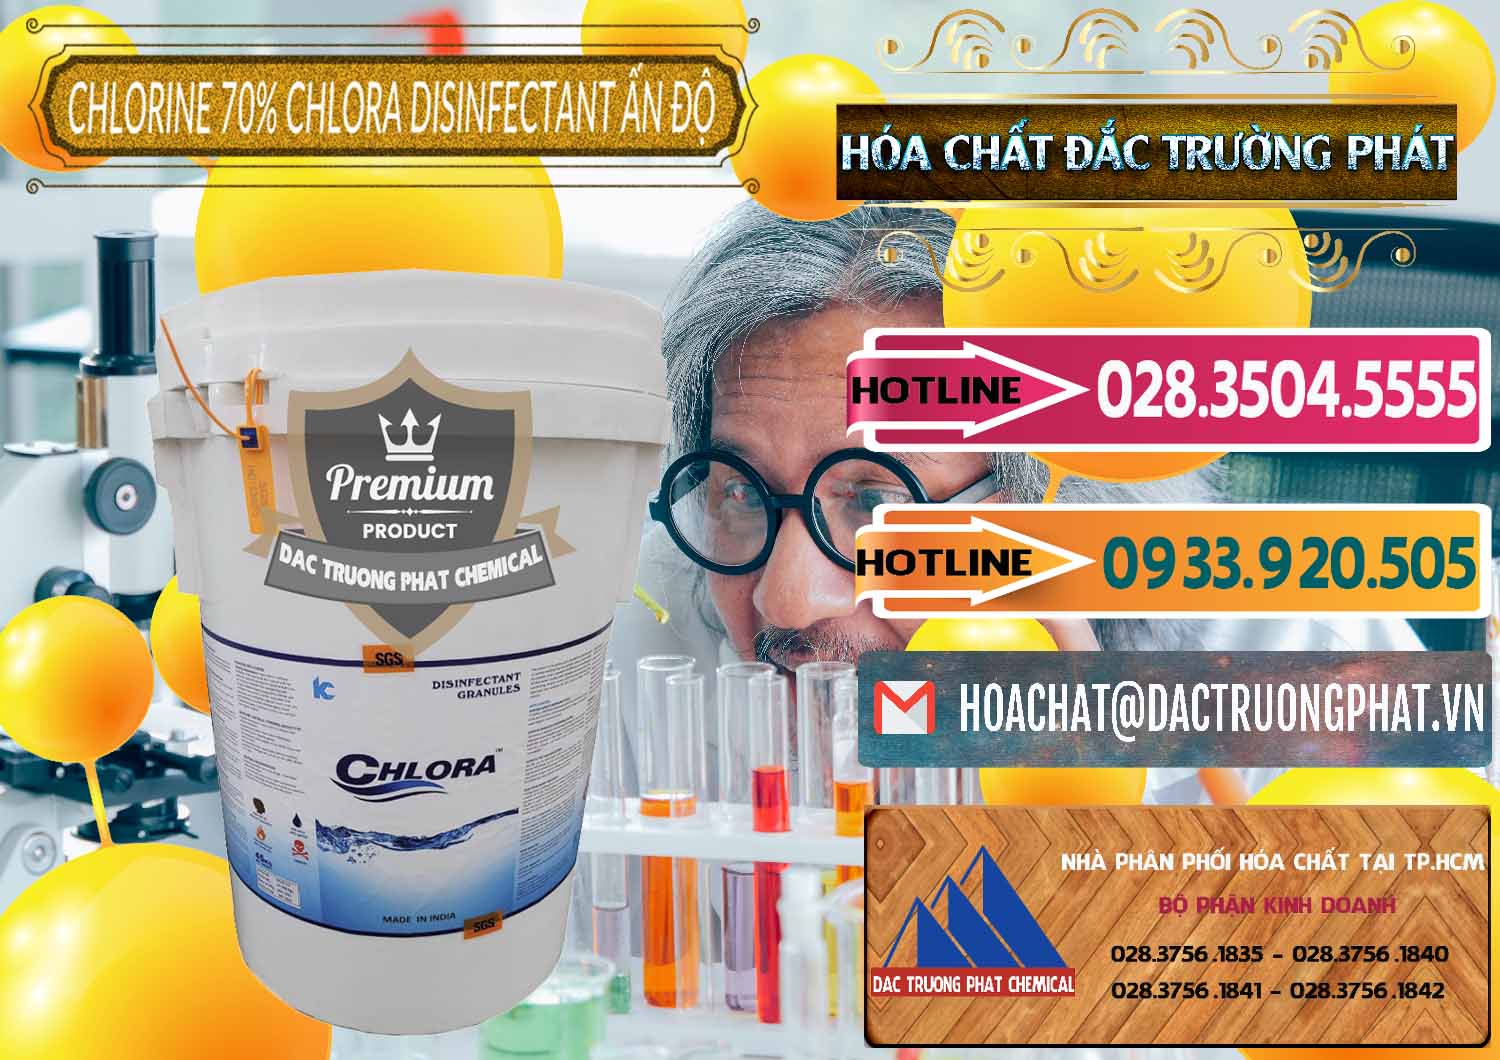 Cty chuyên phân phối _ bán Chlorine – Clorin 70% Chlora Disinfectant Ấn Độ India - 0213 - Cty chuyên phân phối - kinh doanh hóa chất tại TP.HCM - dactruongphat.vn